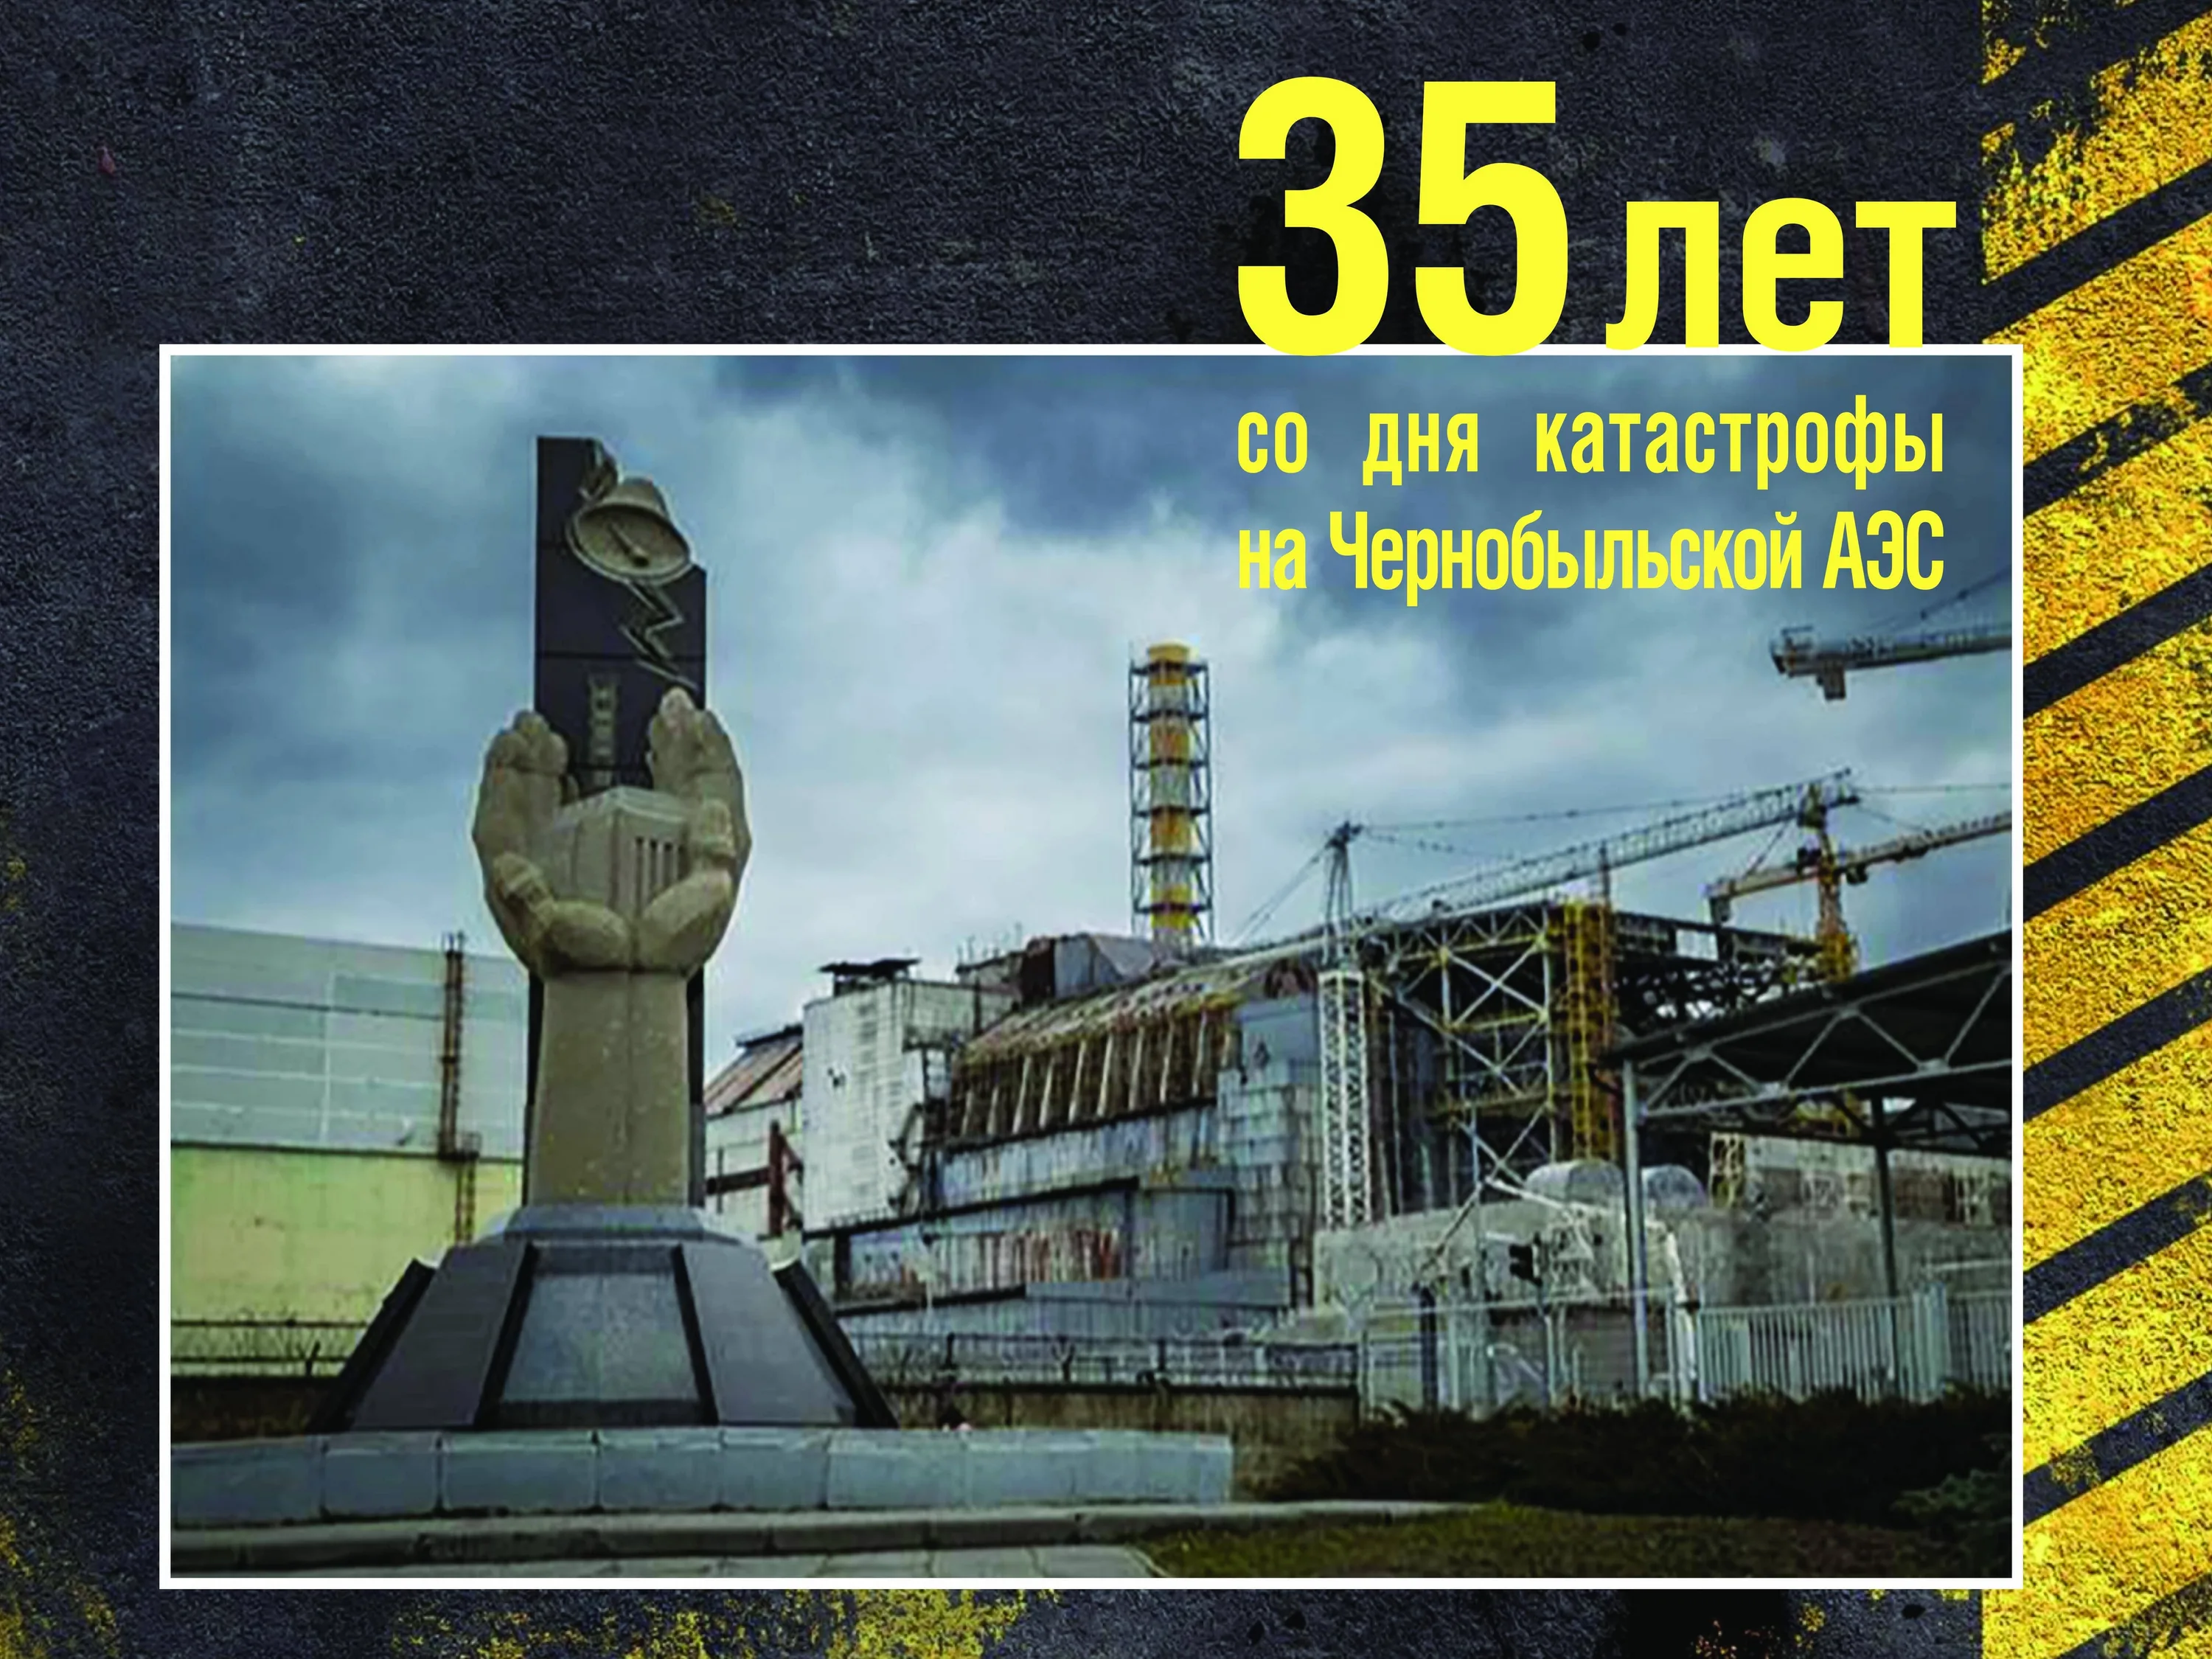 26 Апреля 1986 день памяти Чернобыльской АЭС. Чернобыль взрыв атомной станции 1986. ЧАЭС 26.04.1986. 35 Лет со дня аварии на Чернобыльской АЭС. 26 апреля день чернобыля